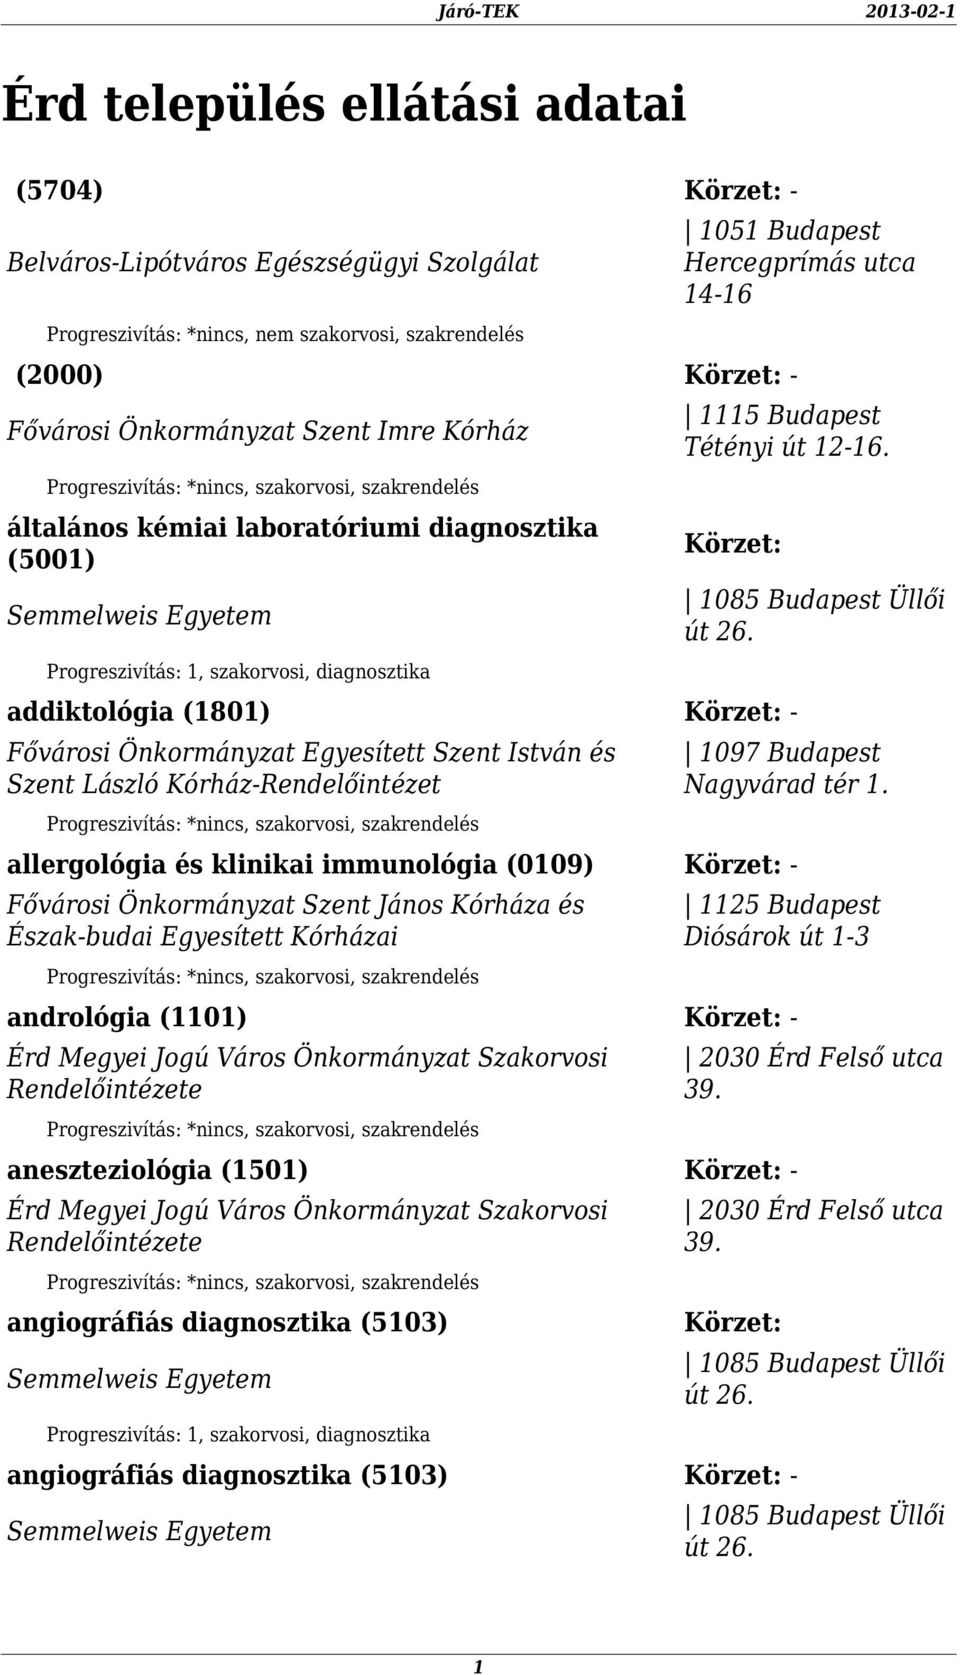 addiktológia (1801) - Fővárosi Önkormányzat Egyesített Szent István és Szent László Kórház-Rendelőintézet 1097 Budapest Nagyvárad tér 1.